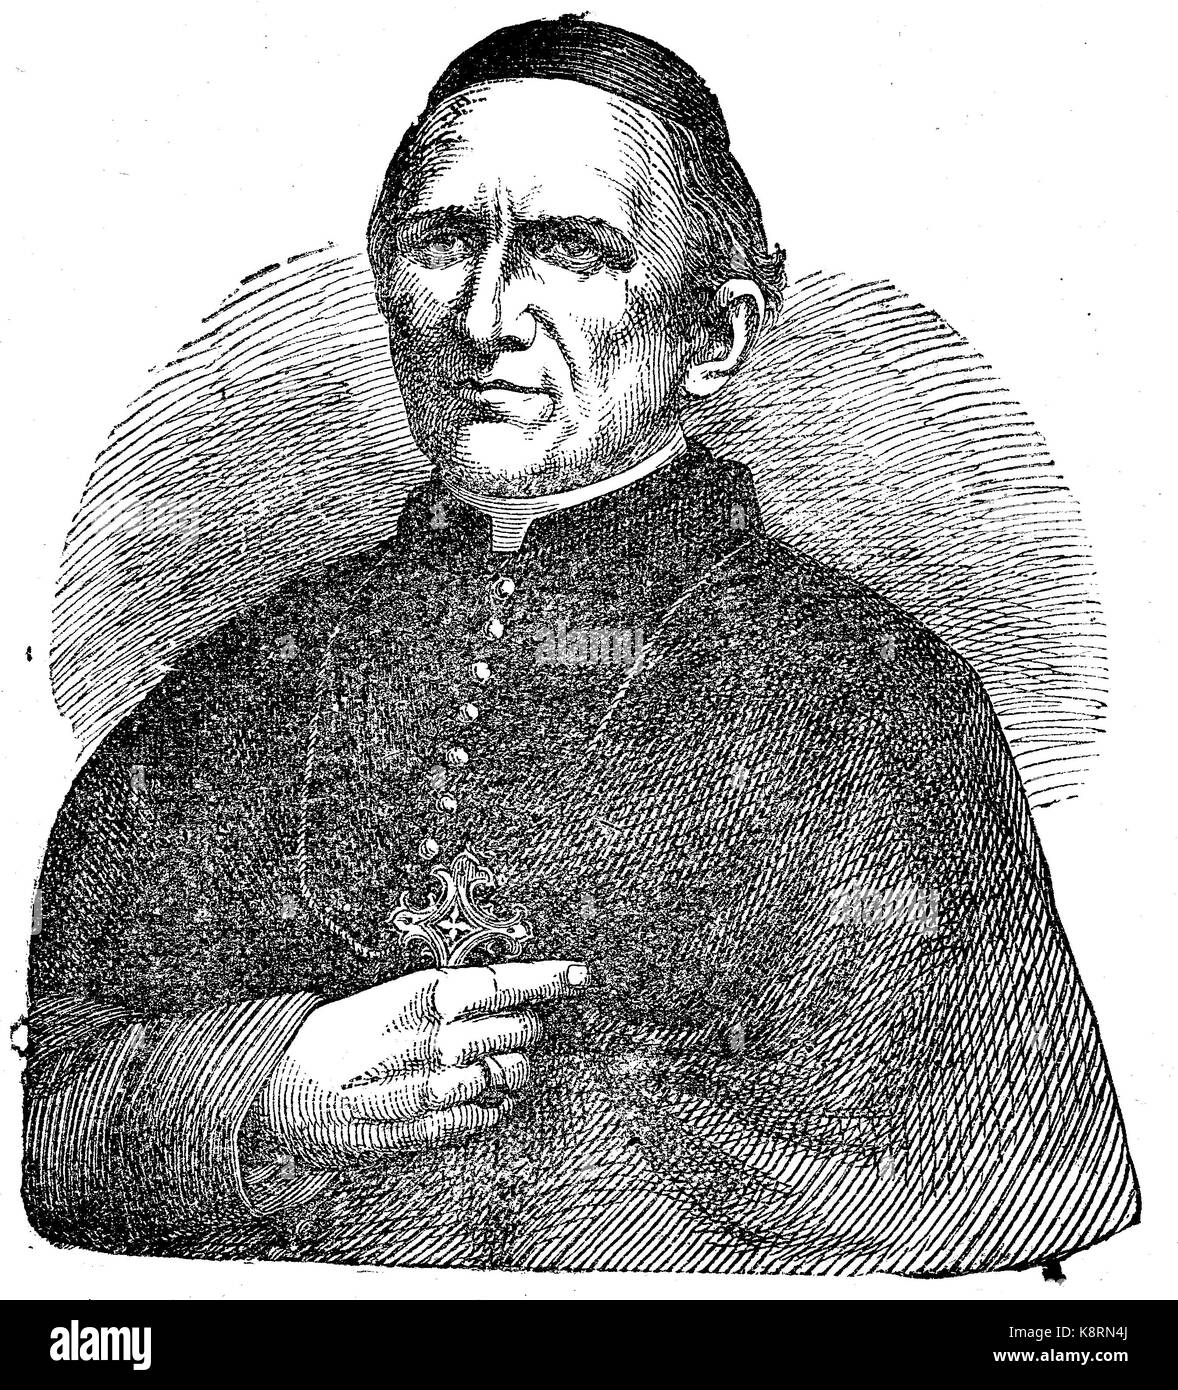 Paul Melchers,1813 - 1895 era un cardinale e arcivescovo di Colonia, digitale Riproduzione migliorata di una xilografia, pubblicata nel XIX secolo Foto Stock